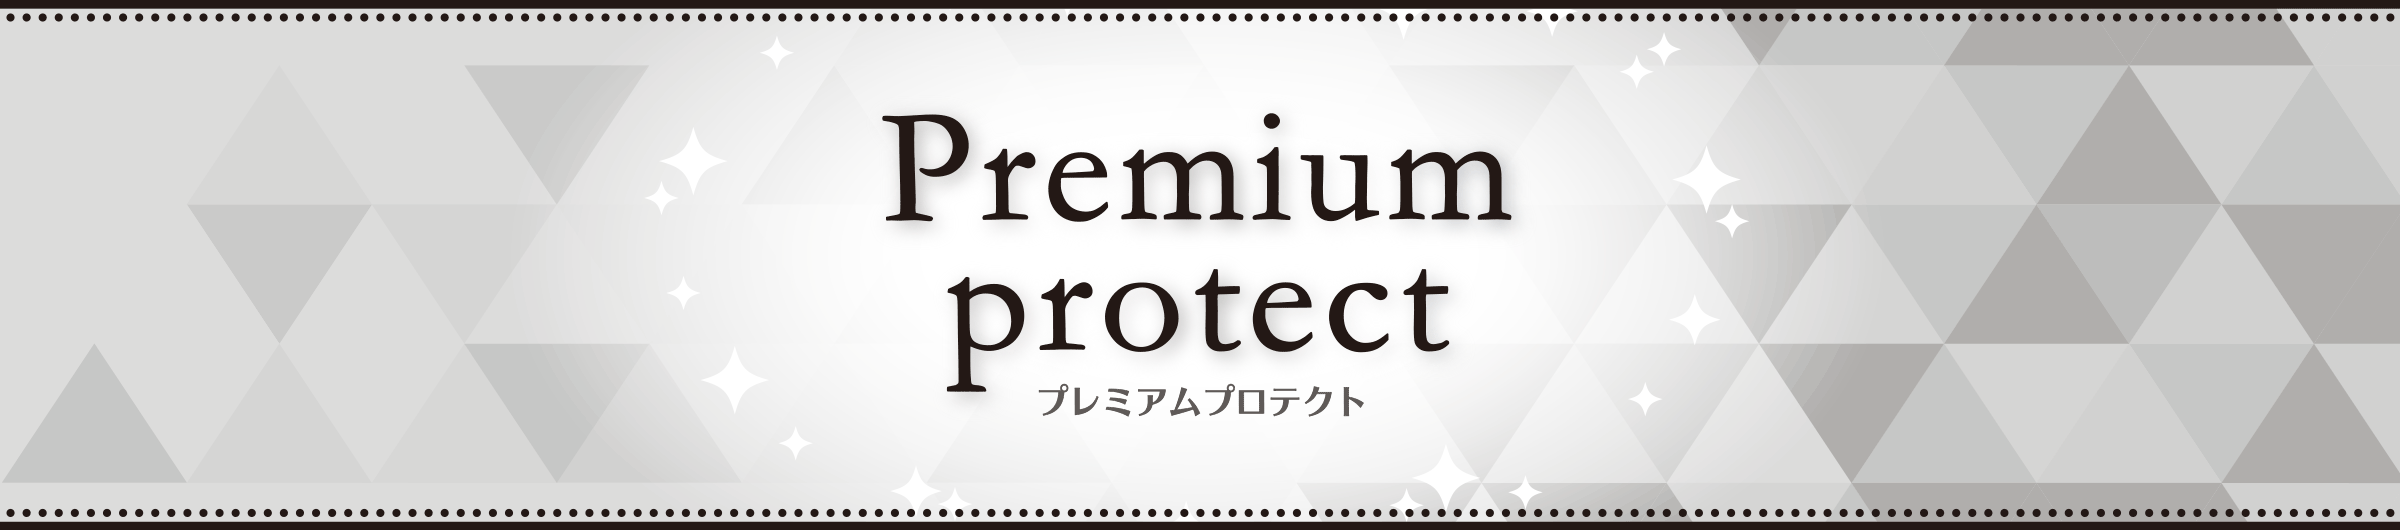 Premium protect プレミアムプロテクト